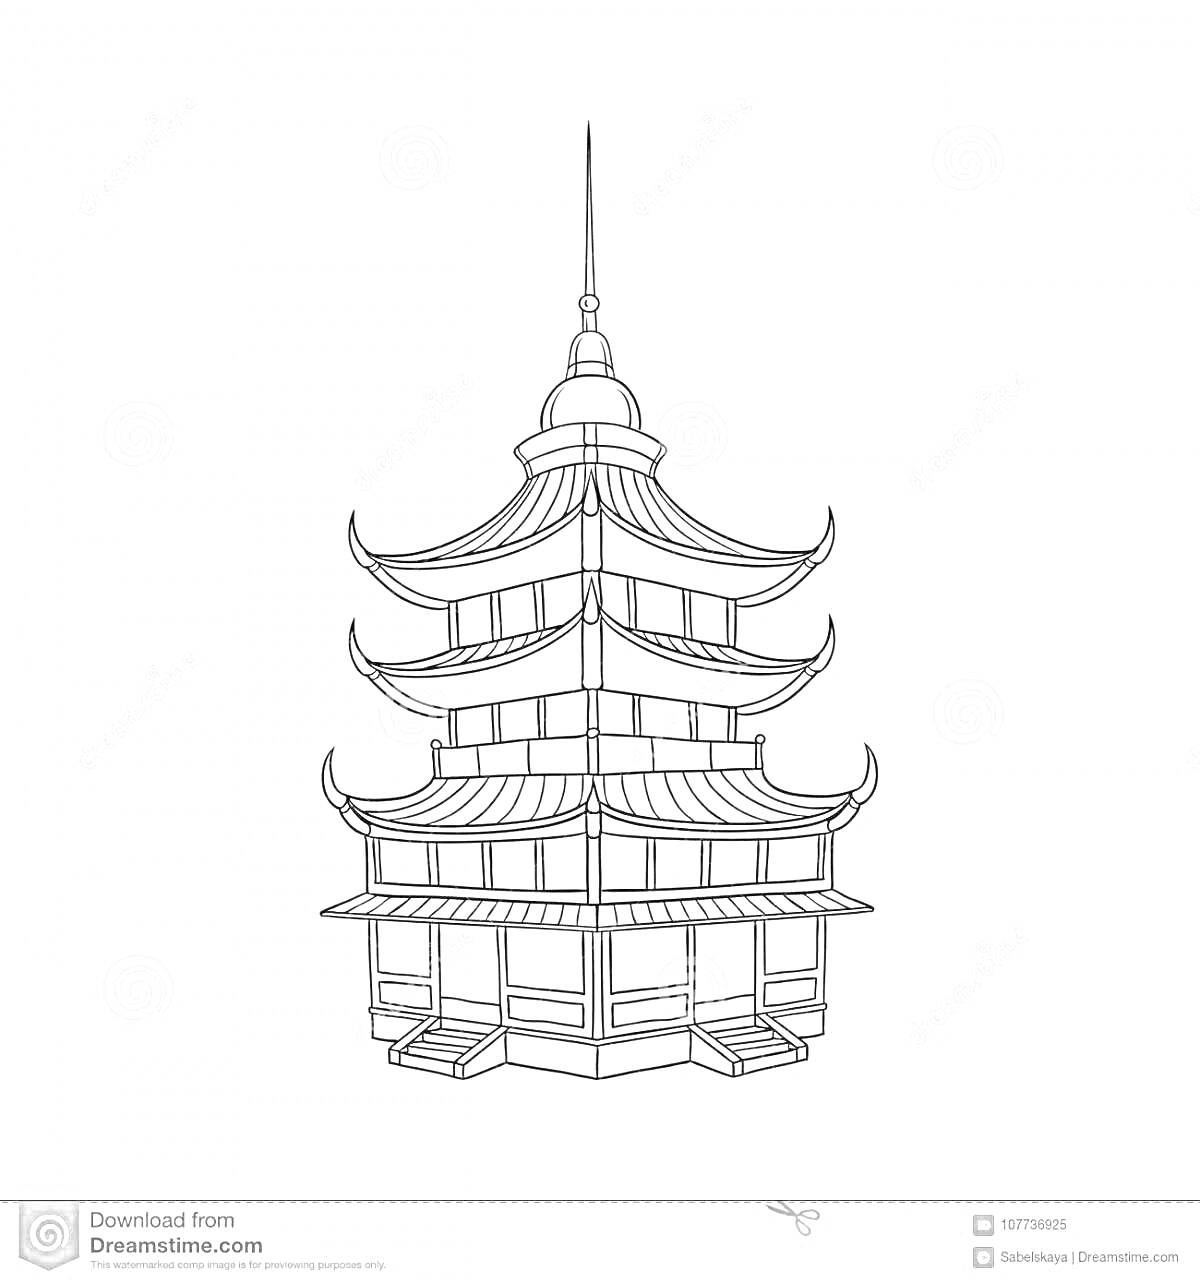 На раскраске изображено: Храм, Китайский, Пагода, Крыша, Шпиль, Архитектура, Восточный стиль